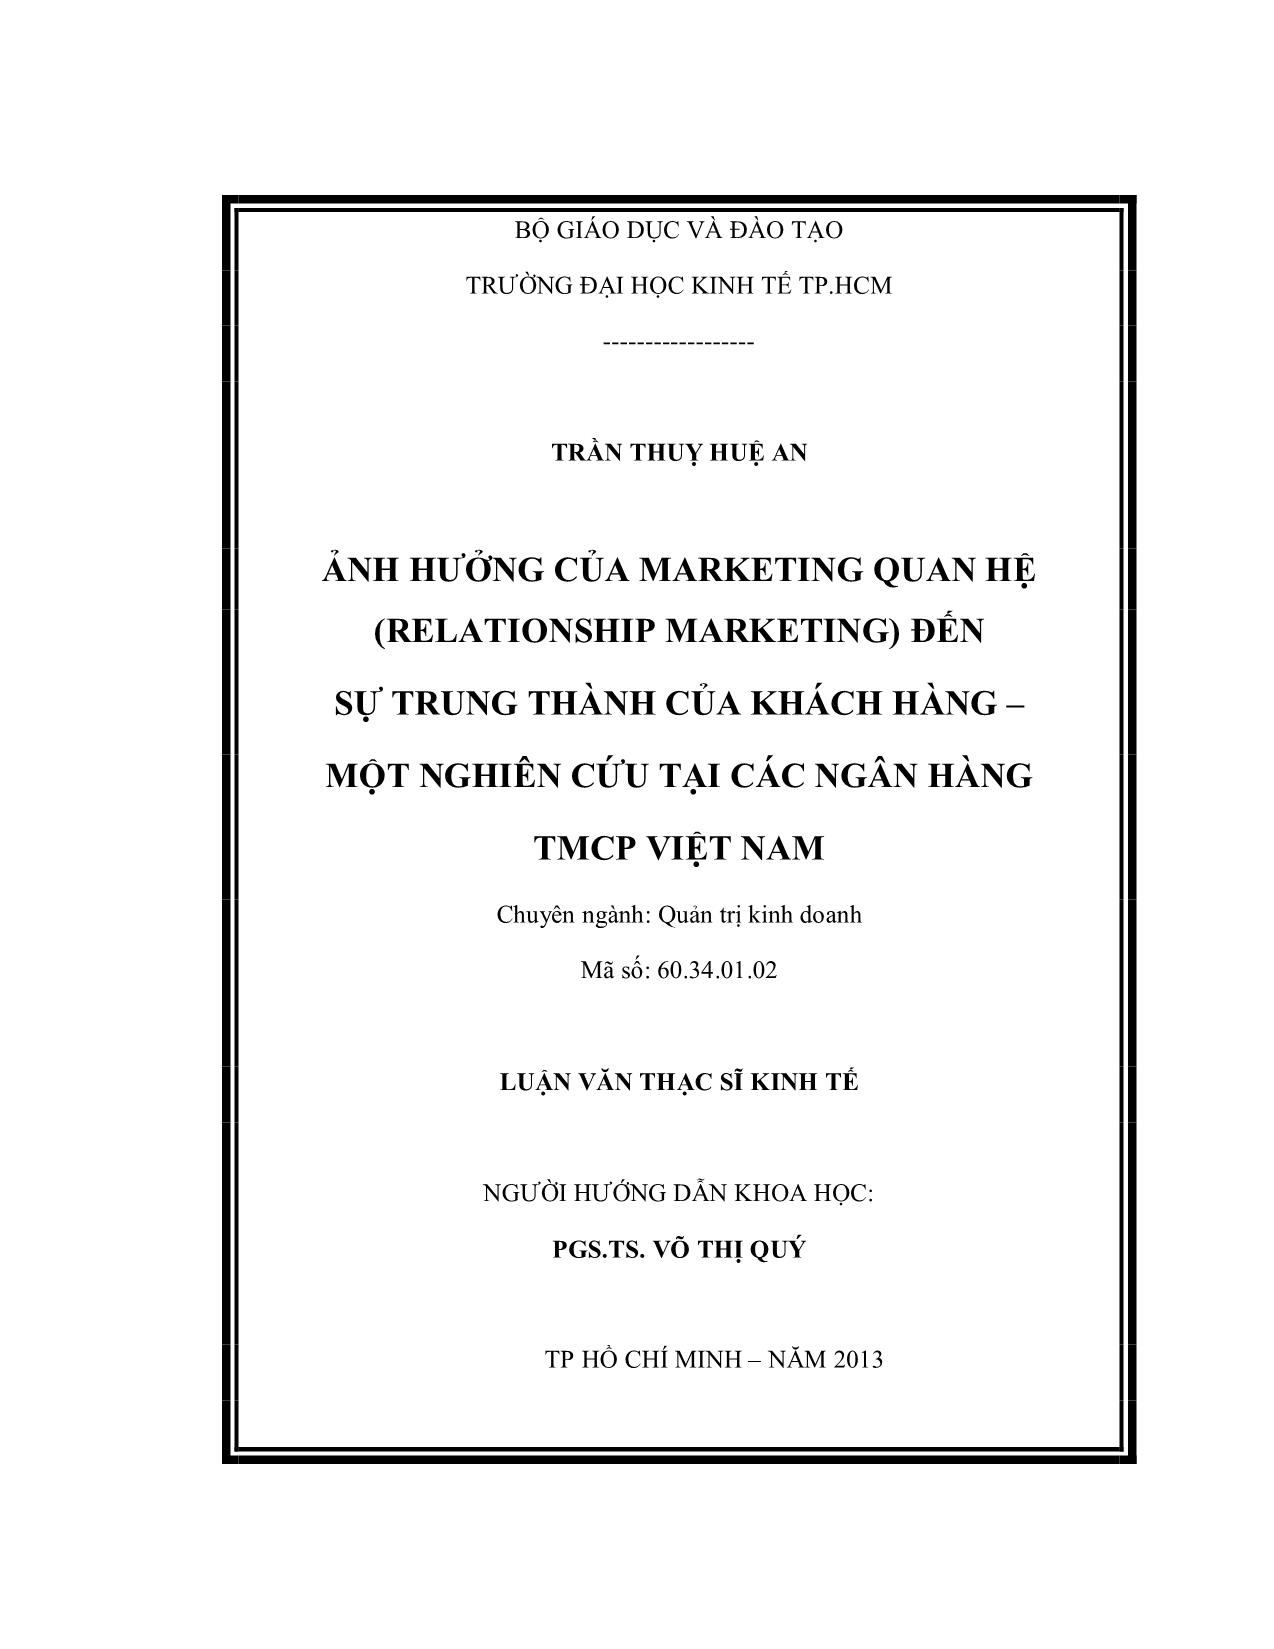 Ảnh hưởng của marketing quan hệ (relationship marketing) đến sự trung thành của khách hàng – Một nghiên cứu tại các ngân hàng TMCP Việt Nam trang 2